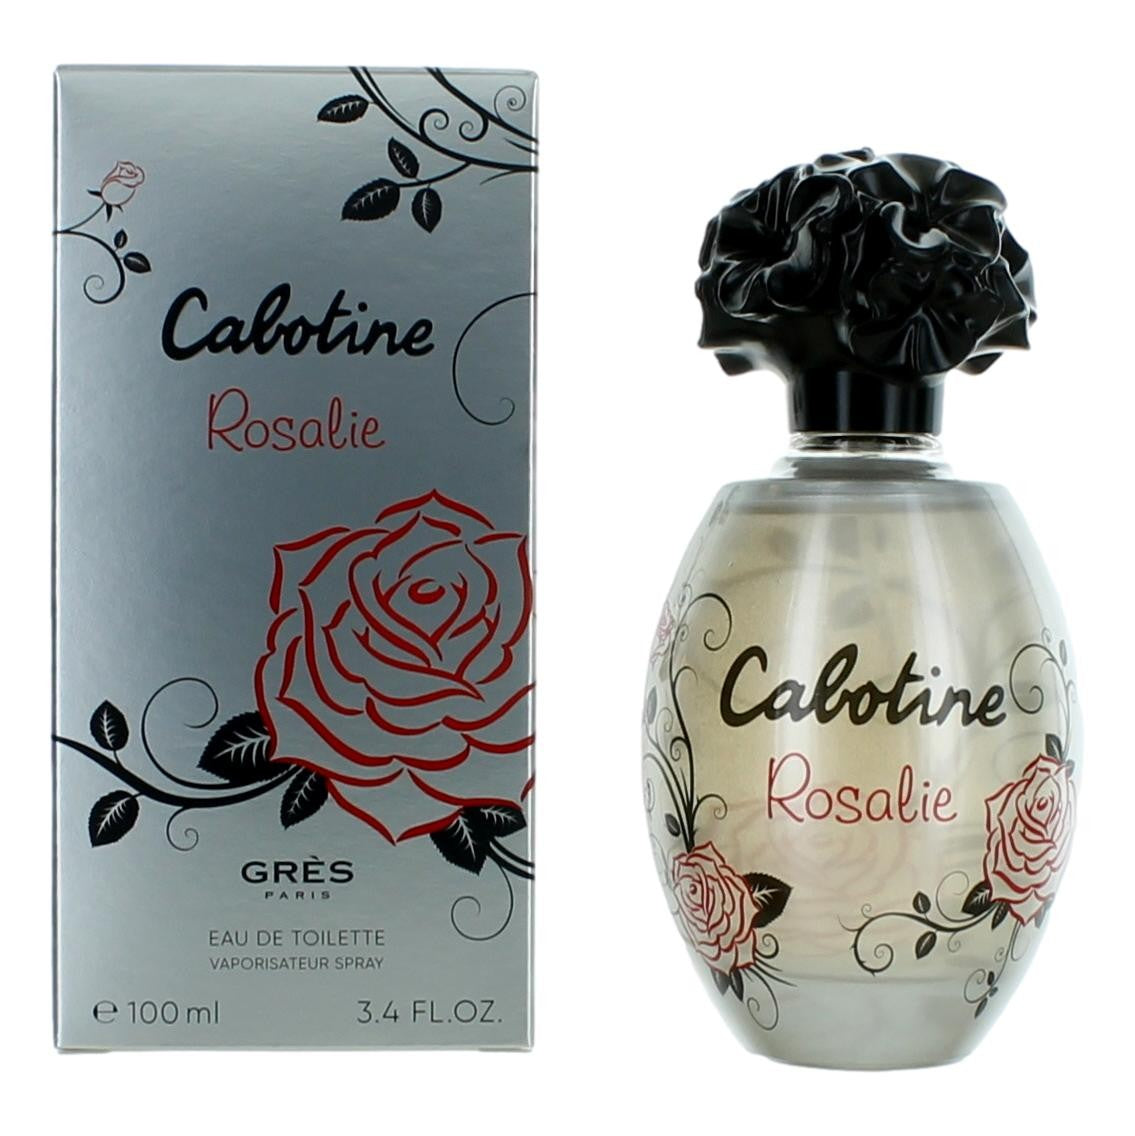 Cabotine Rosalie by Parfum Gres